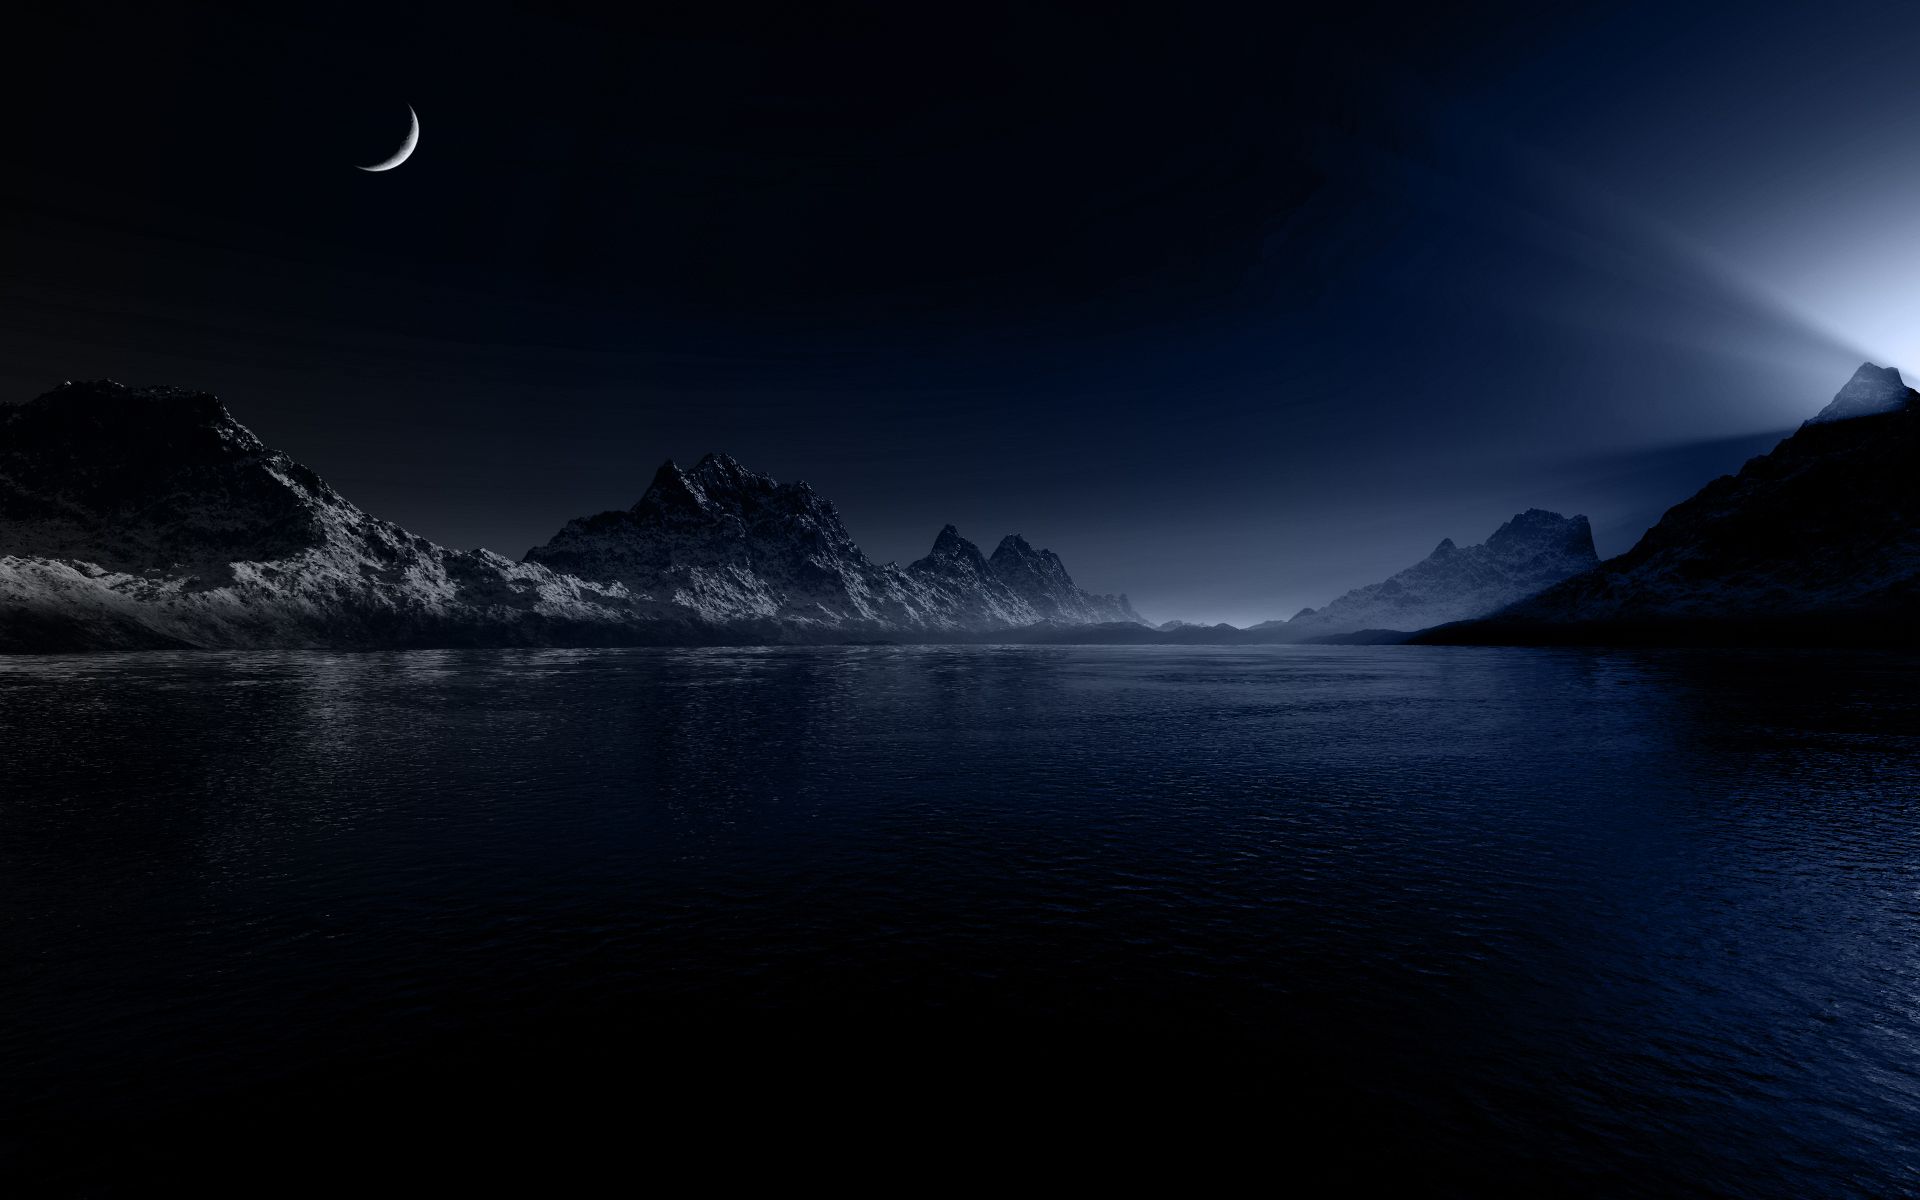 Night Wallpaper, descarga la imagen de una hermosa noche de pantalla panorámica